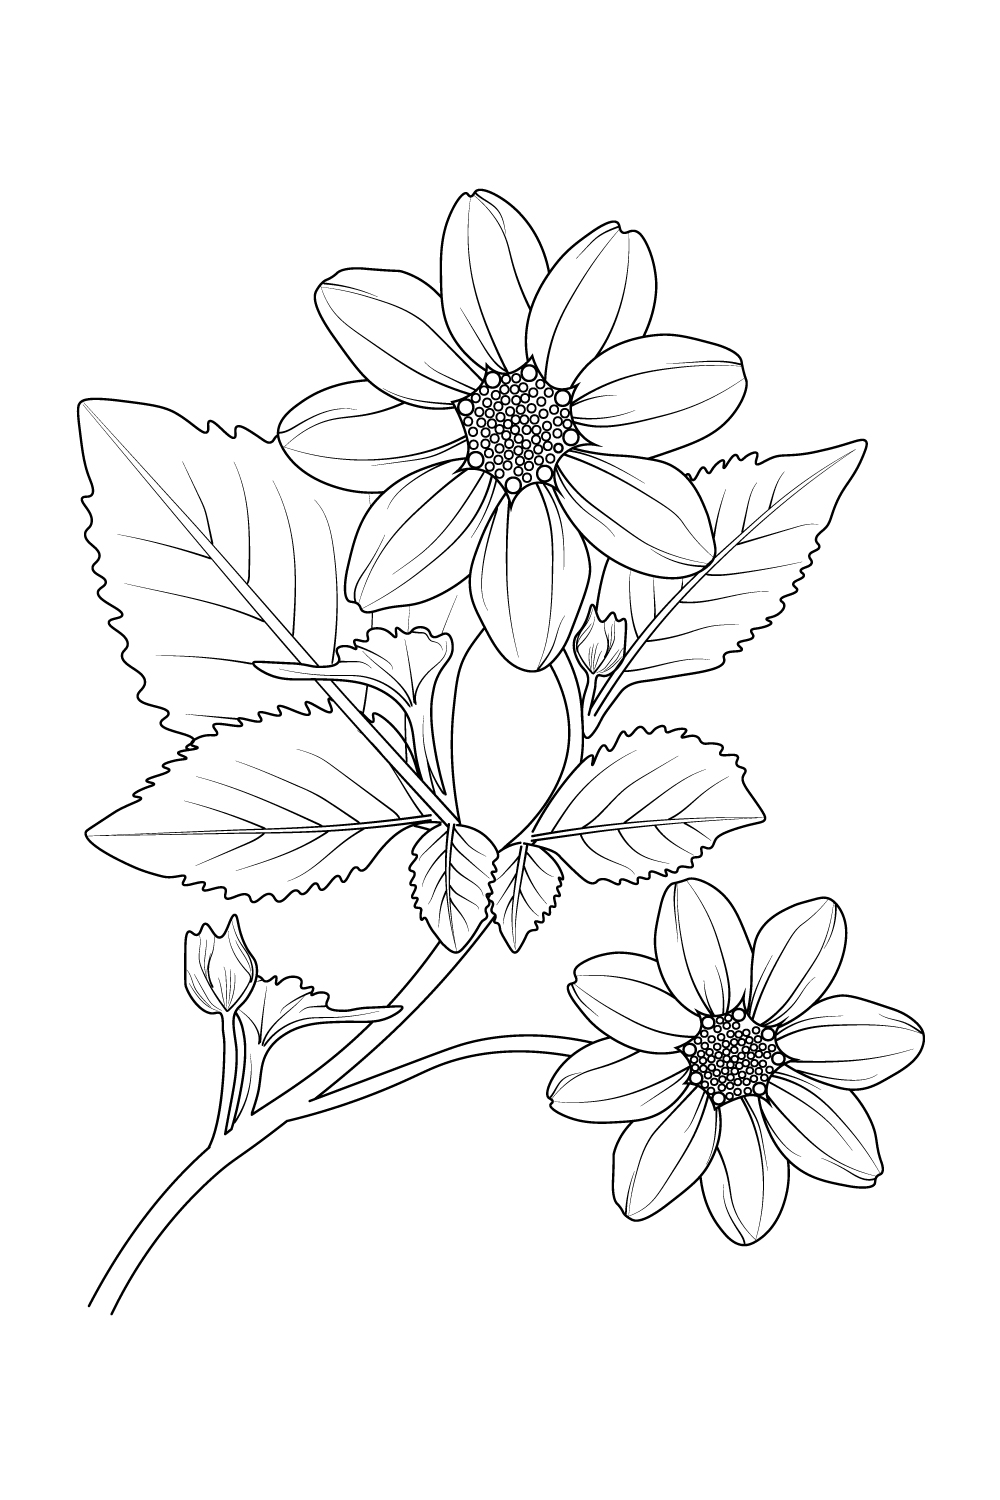 Dahlia Flower Black White Outline Illustration Stock Illustration  1511307929 | Shutterstock